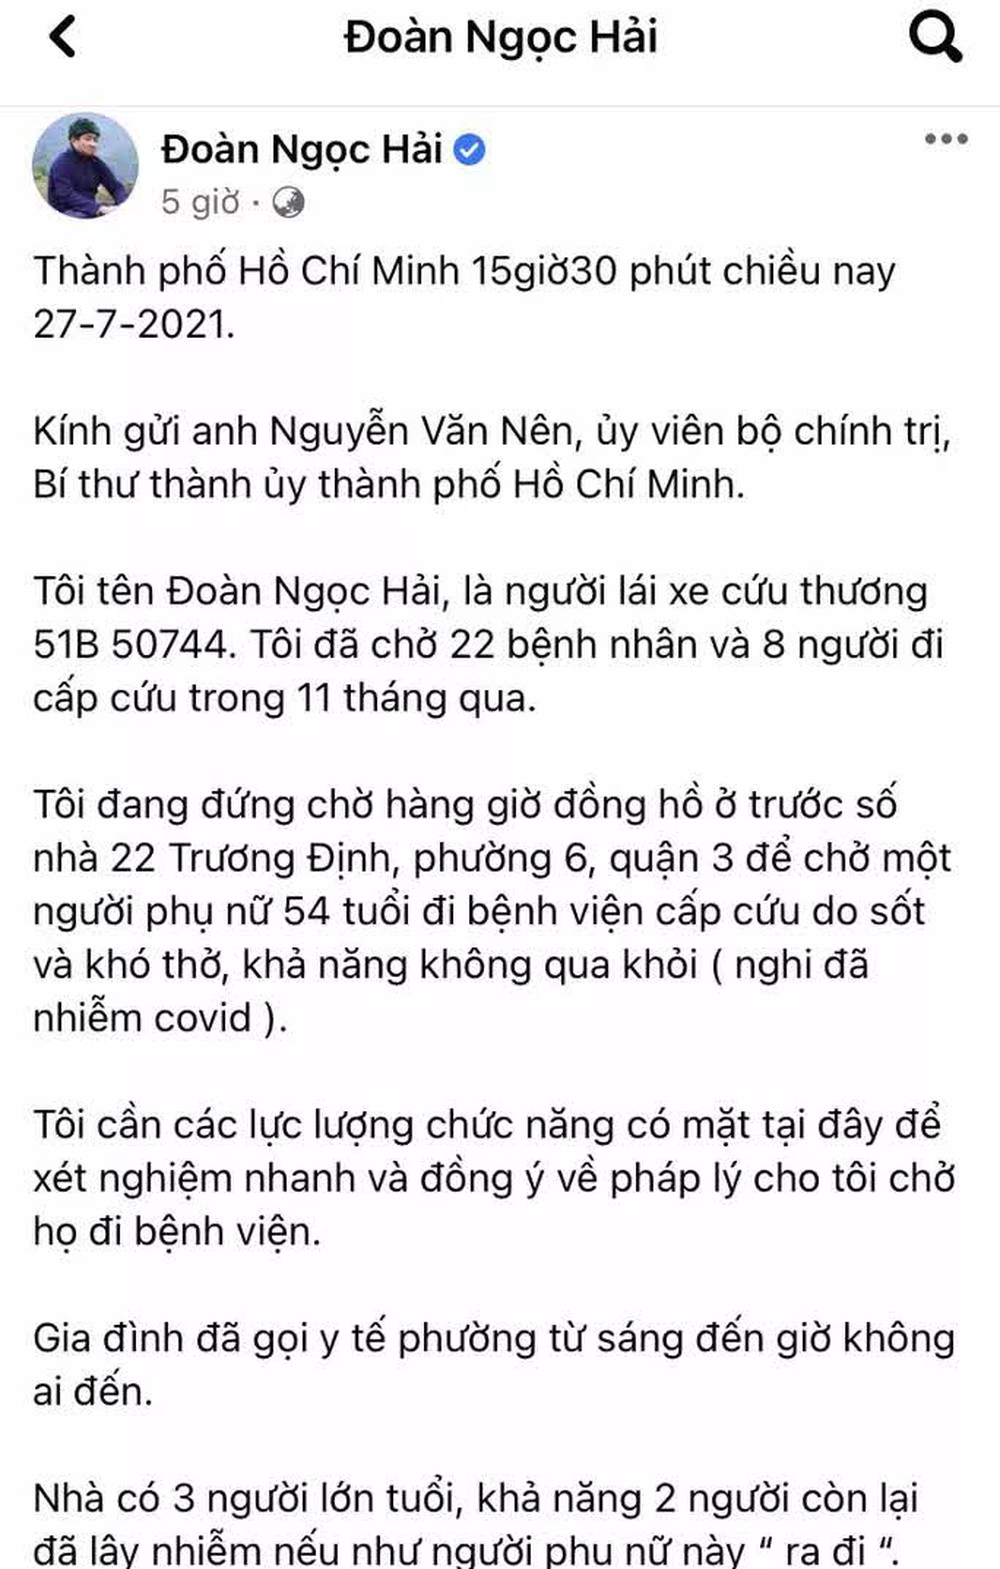 TP HCM: Quận 3 phản bác thông tin ông Đoàn Ngọc Hải phản ánh trên Facebook - Ảnh 1.